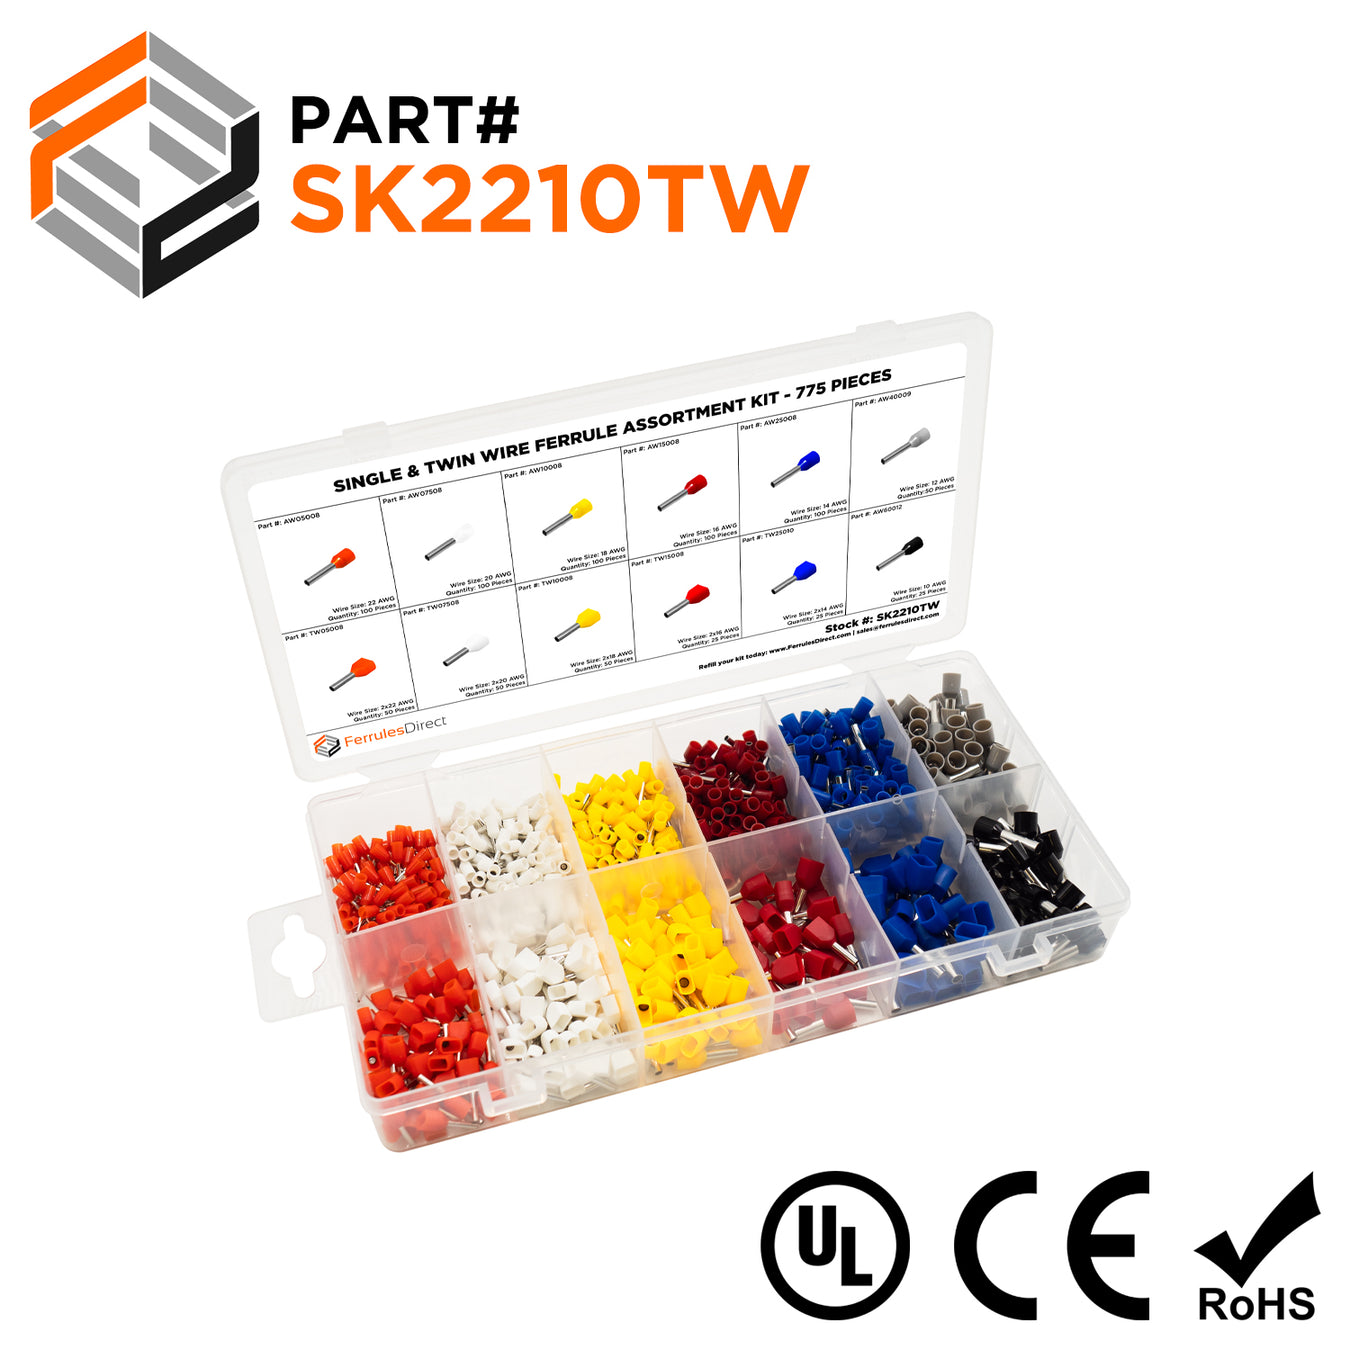 Single & Twin Wire 775 Piece Keystone Kits